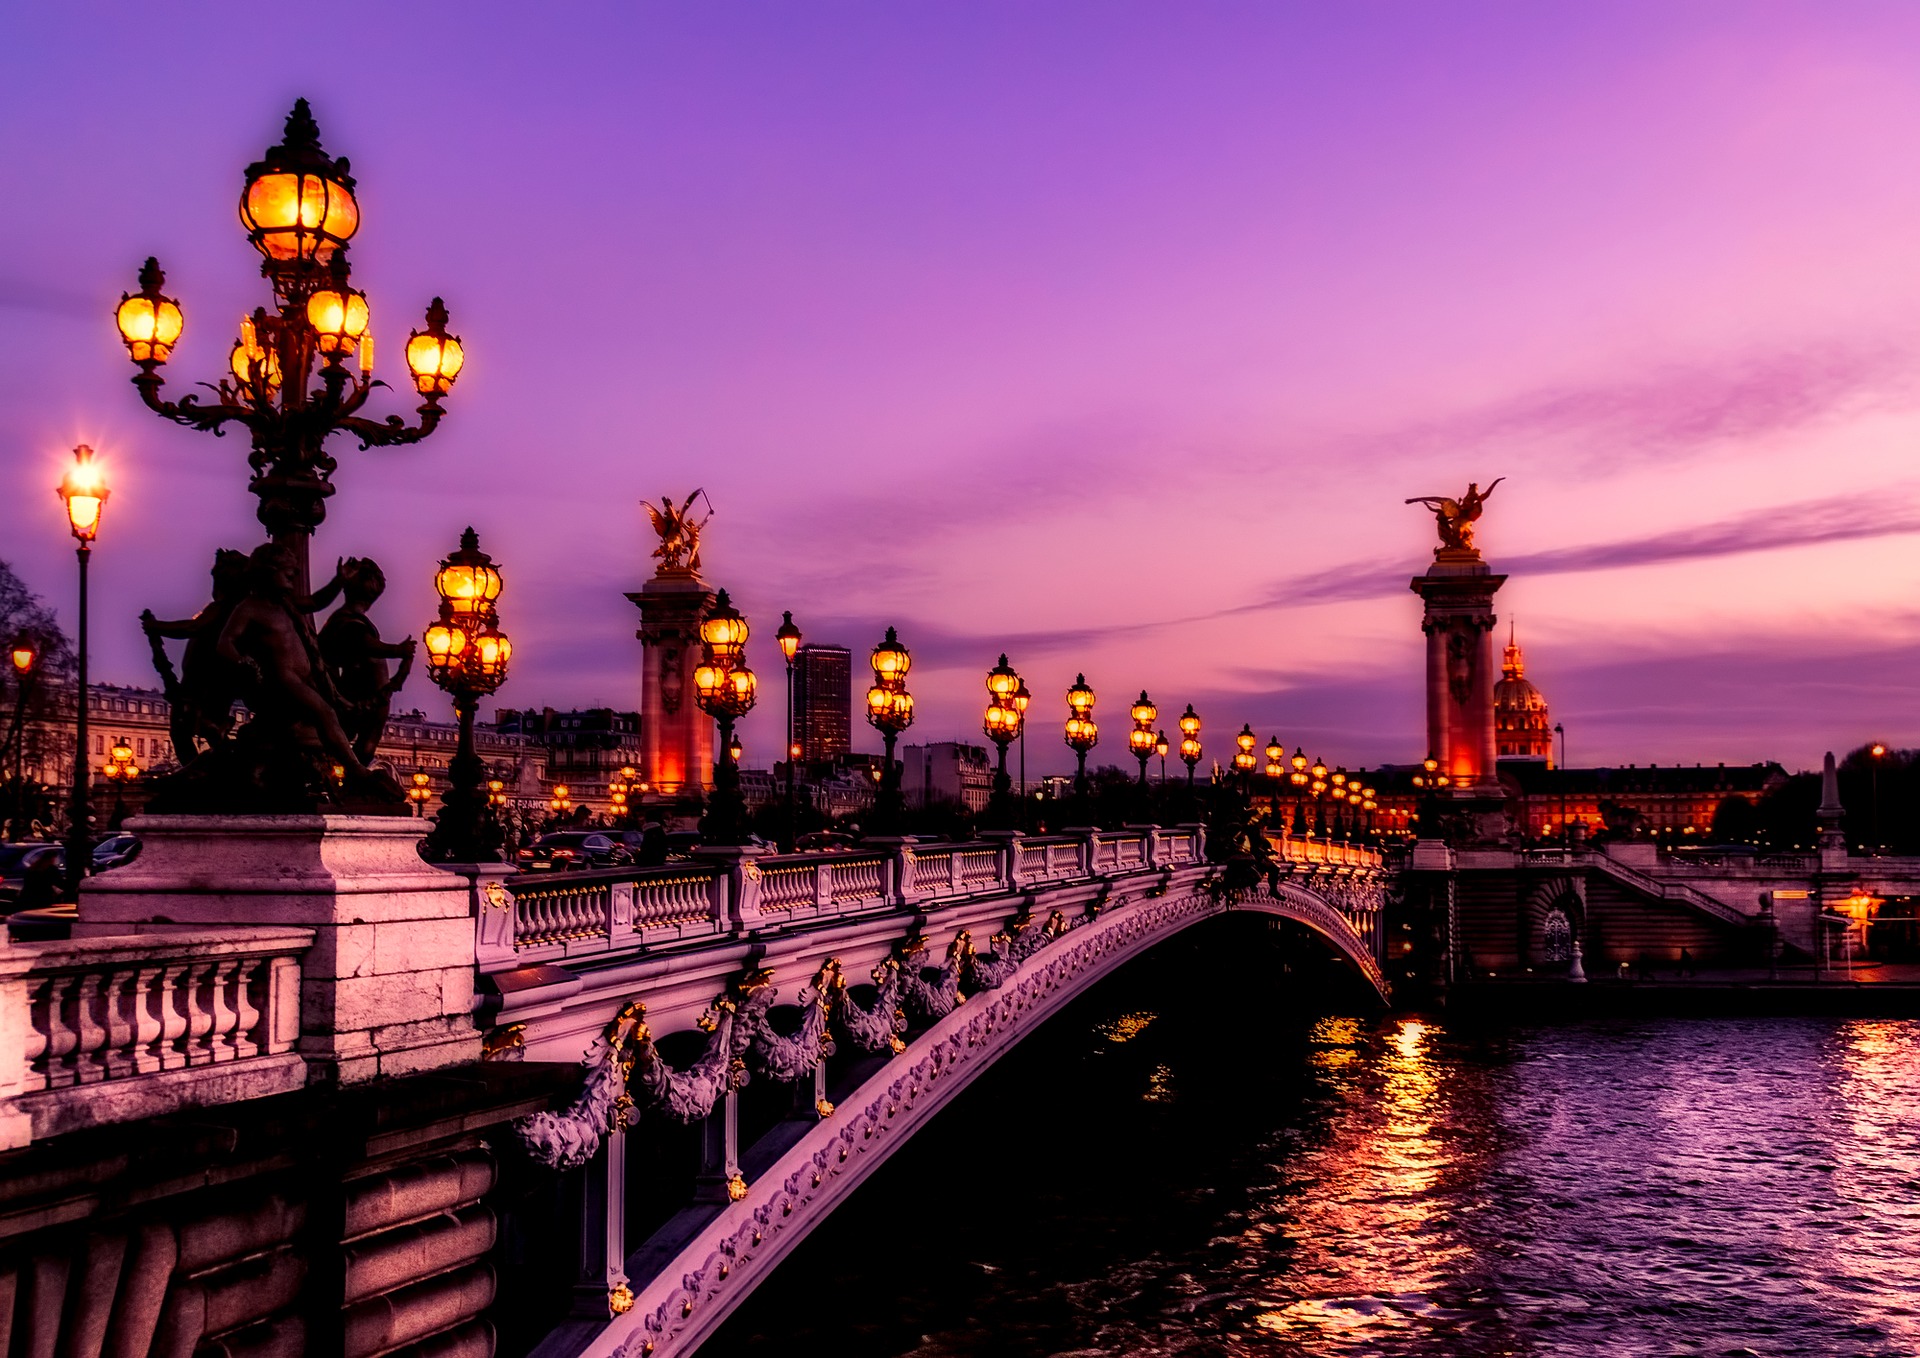 A bridge in Paris